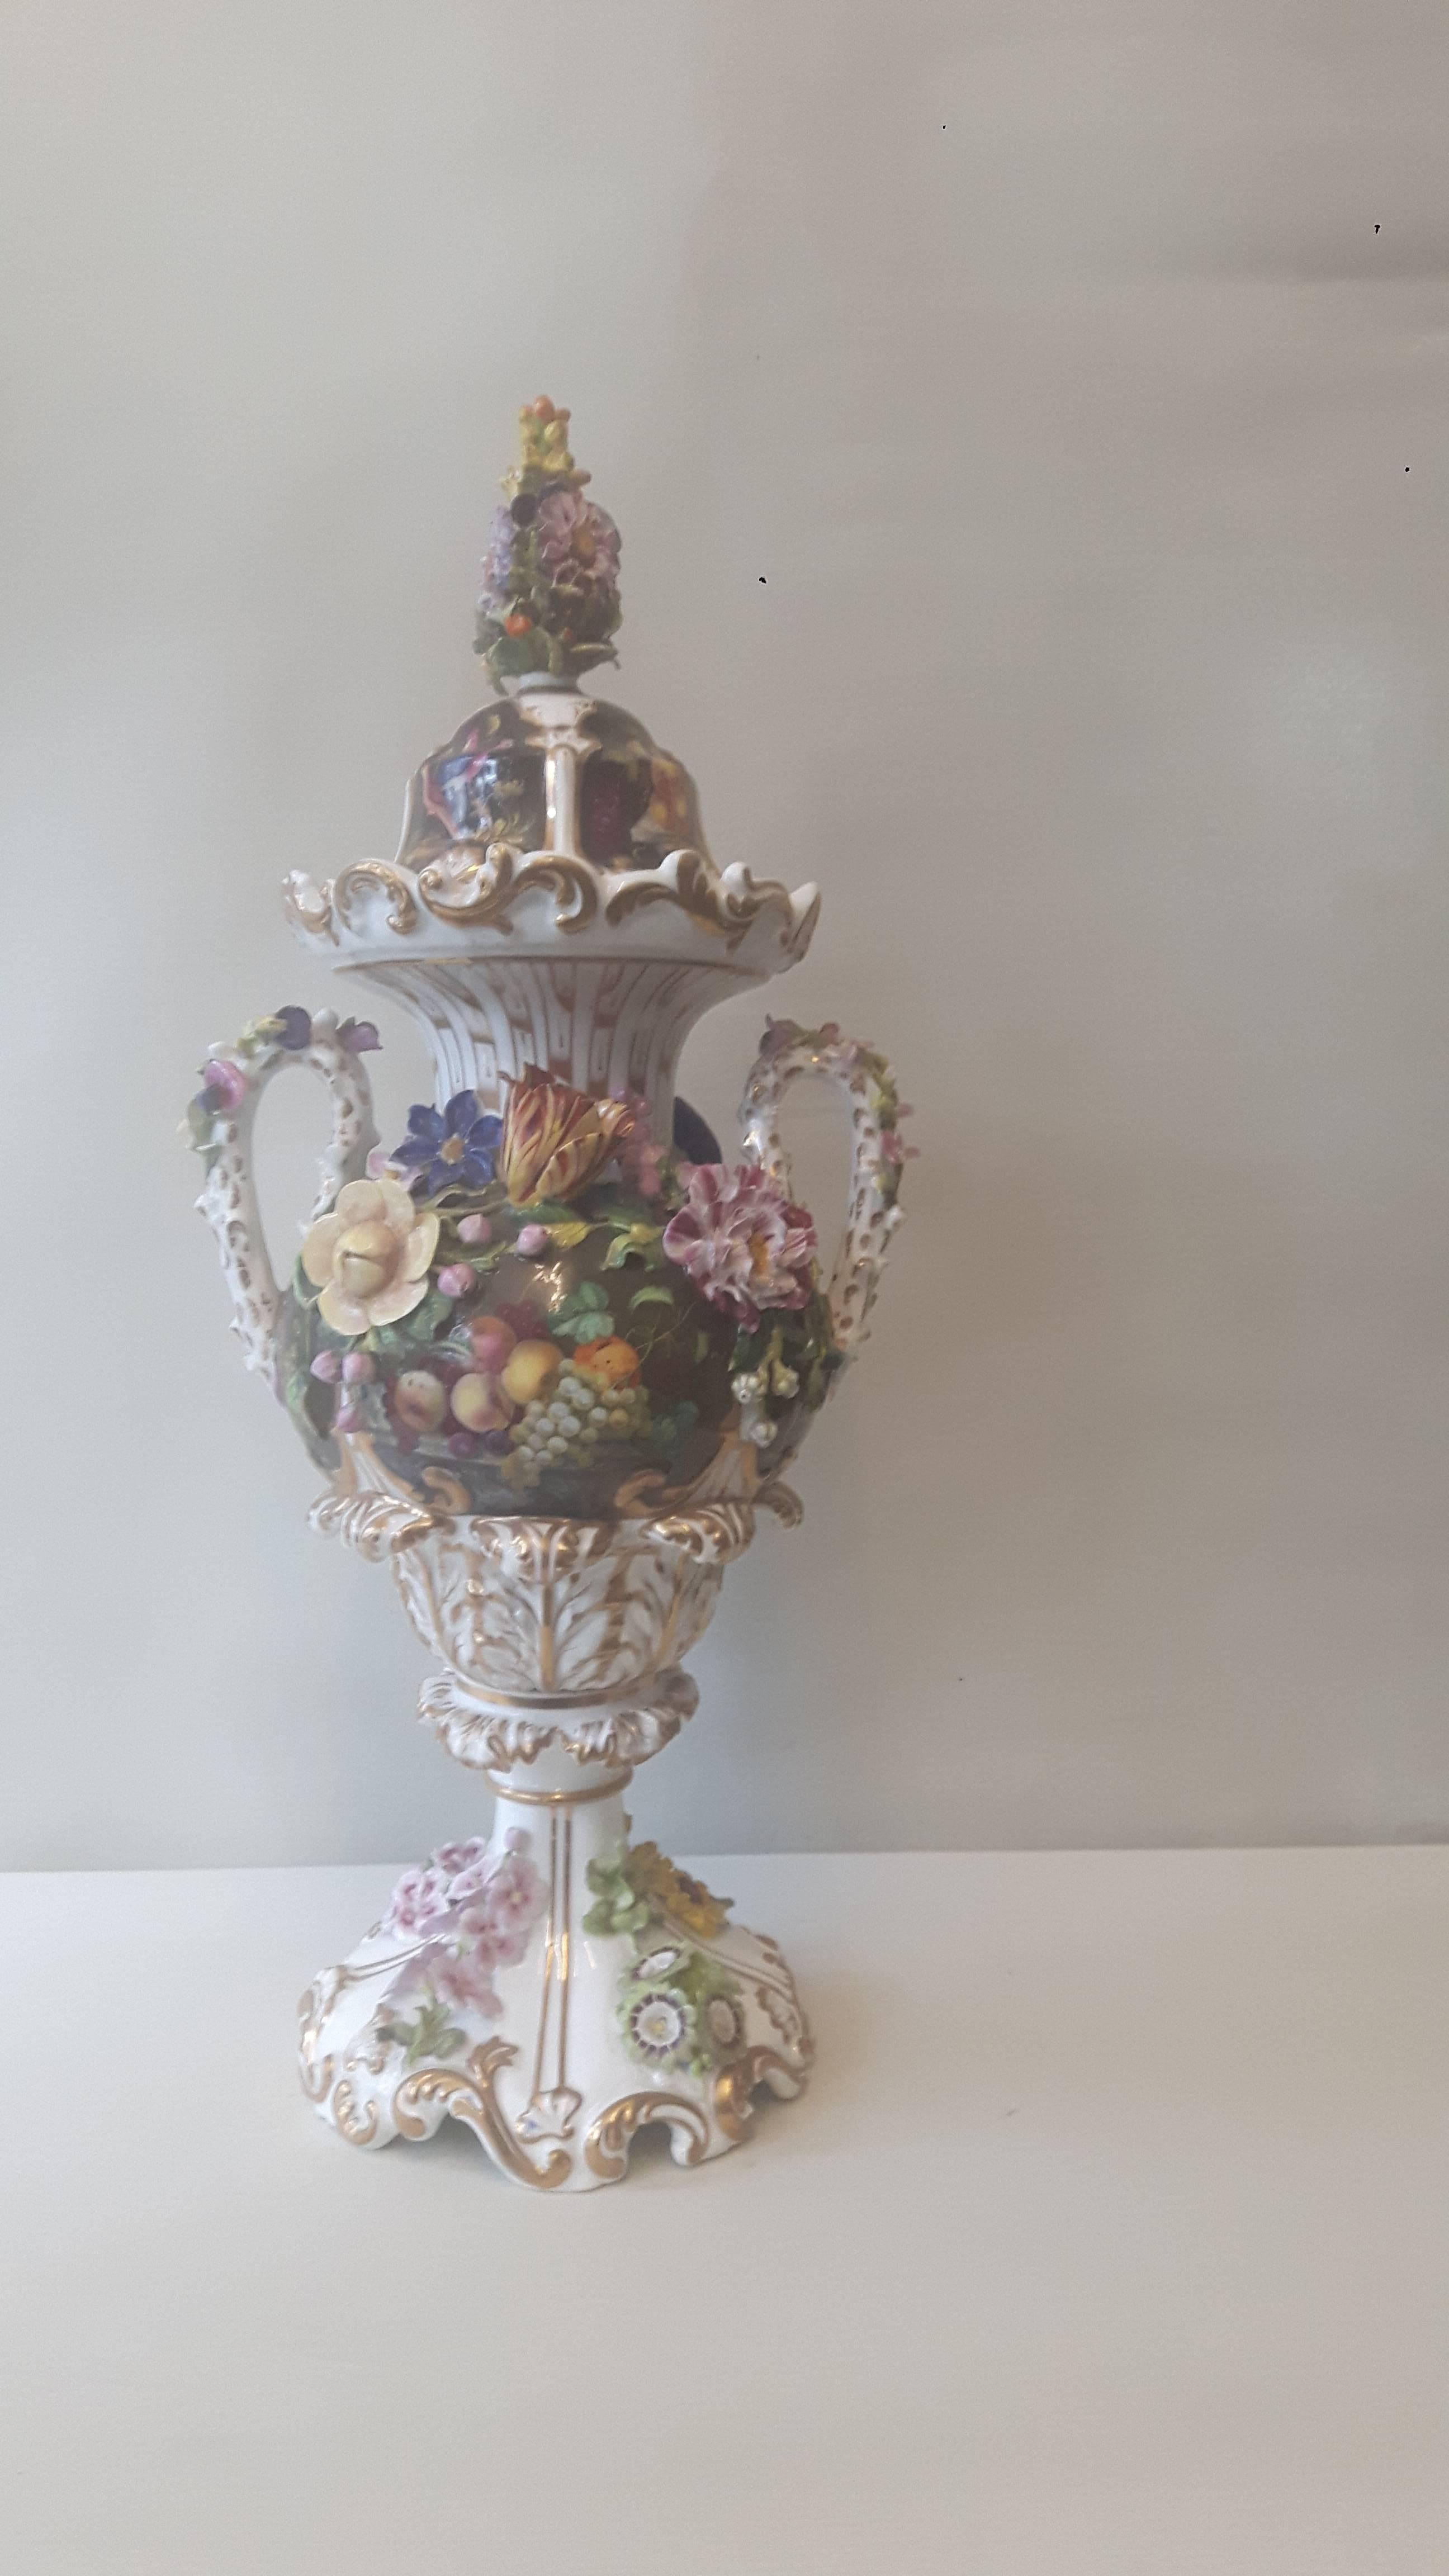 Élégant vase et couvercle en porcelaine anglaise, premier quart du XIXe siècle, probablement de la manufacture de Derby, avec des panneaux peints à la main d'oiseaux et de scènes de fruits et de fleurs, avec des fleurs incrustées.